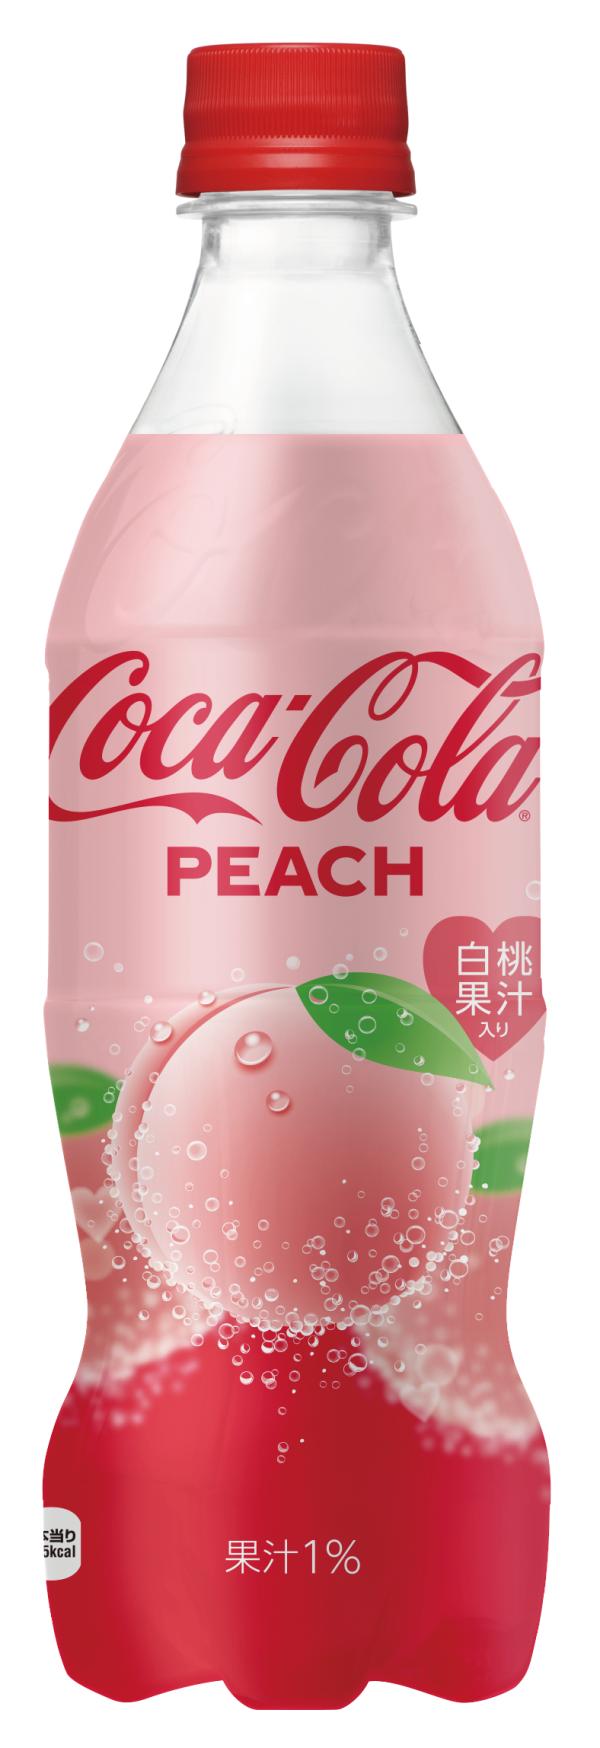 日本可口可樂再度推出桃味可口可樂 2019年1月限定發售